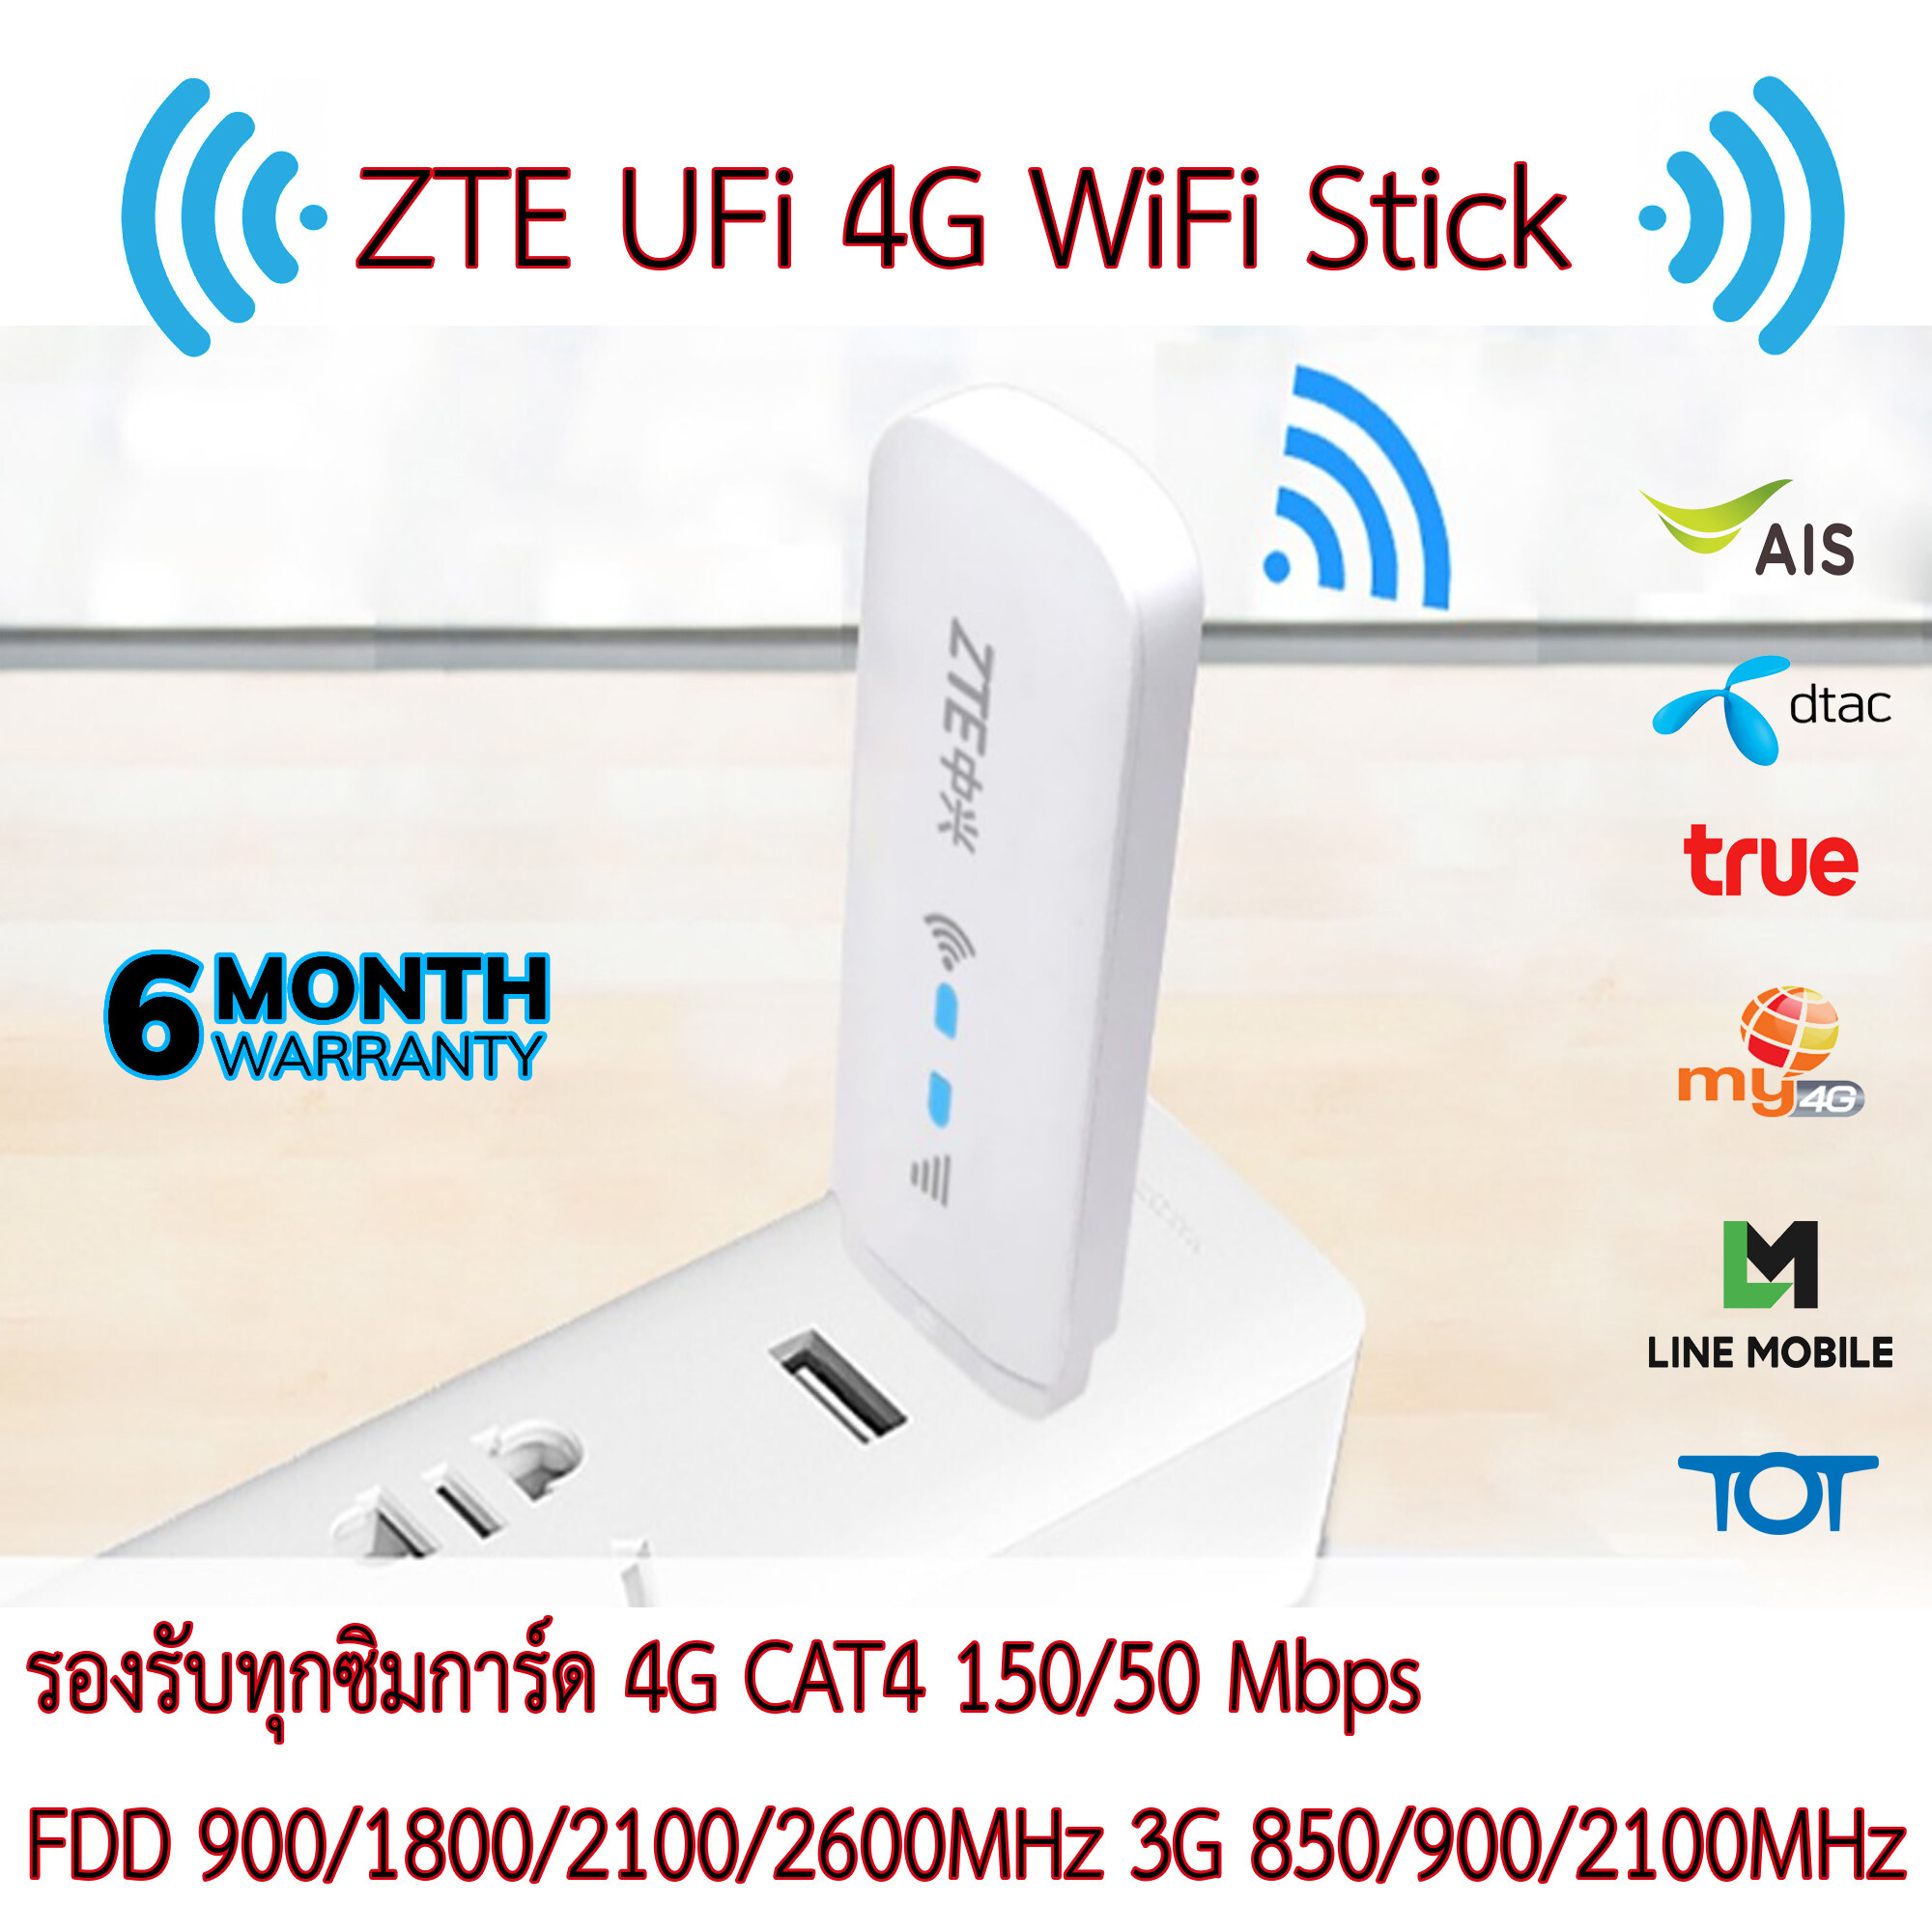 ZTE UFi MF79U USB WiFi 4G Stick